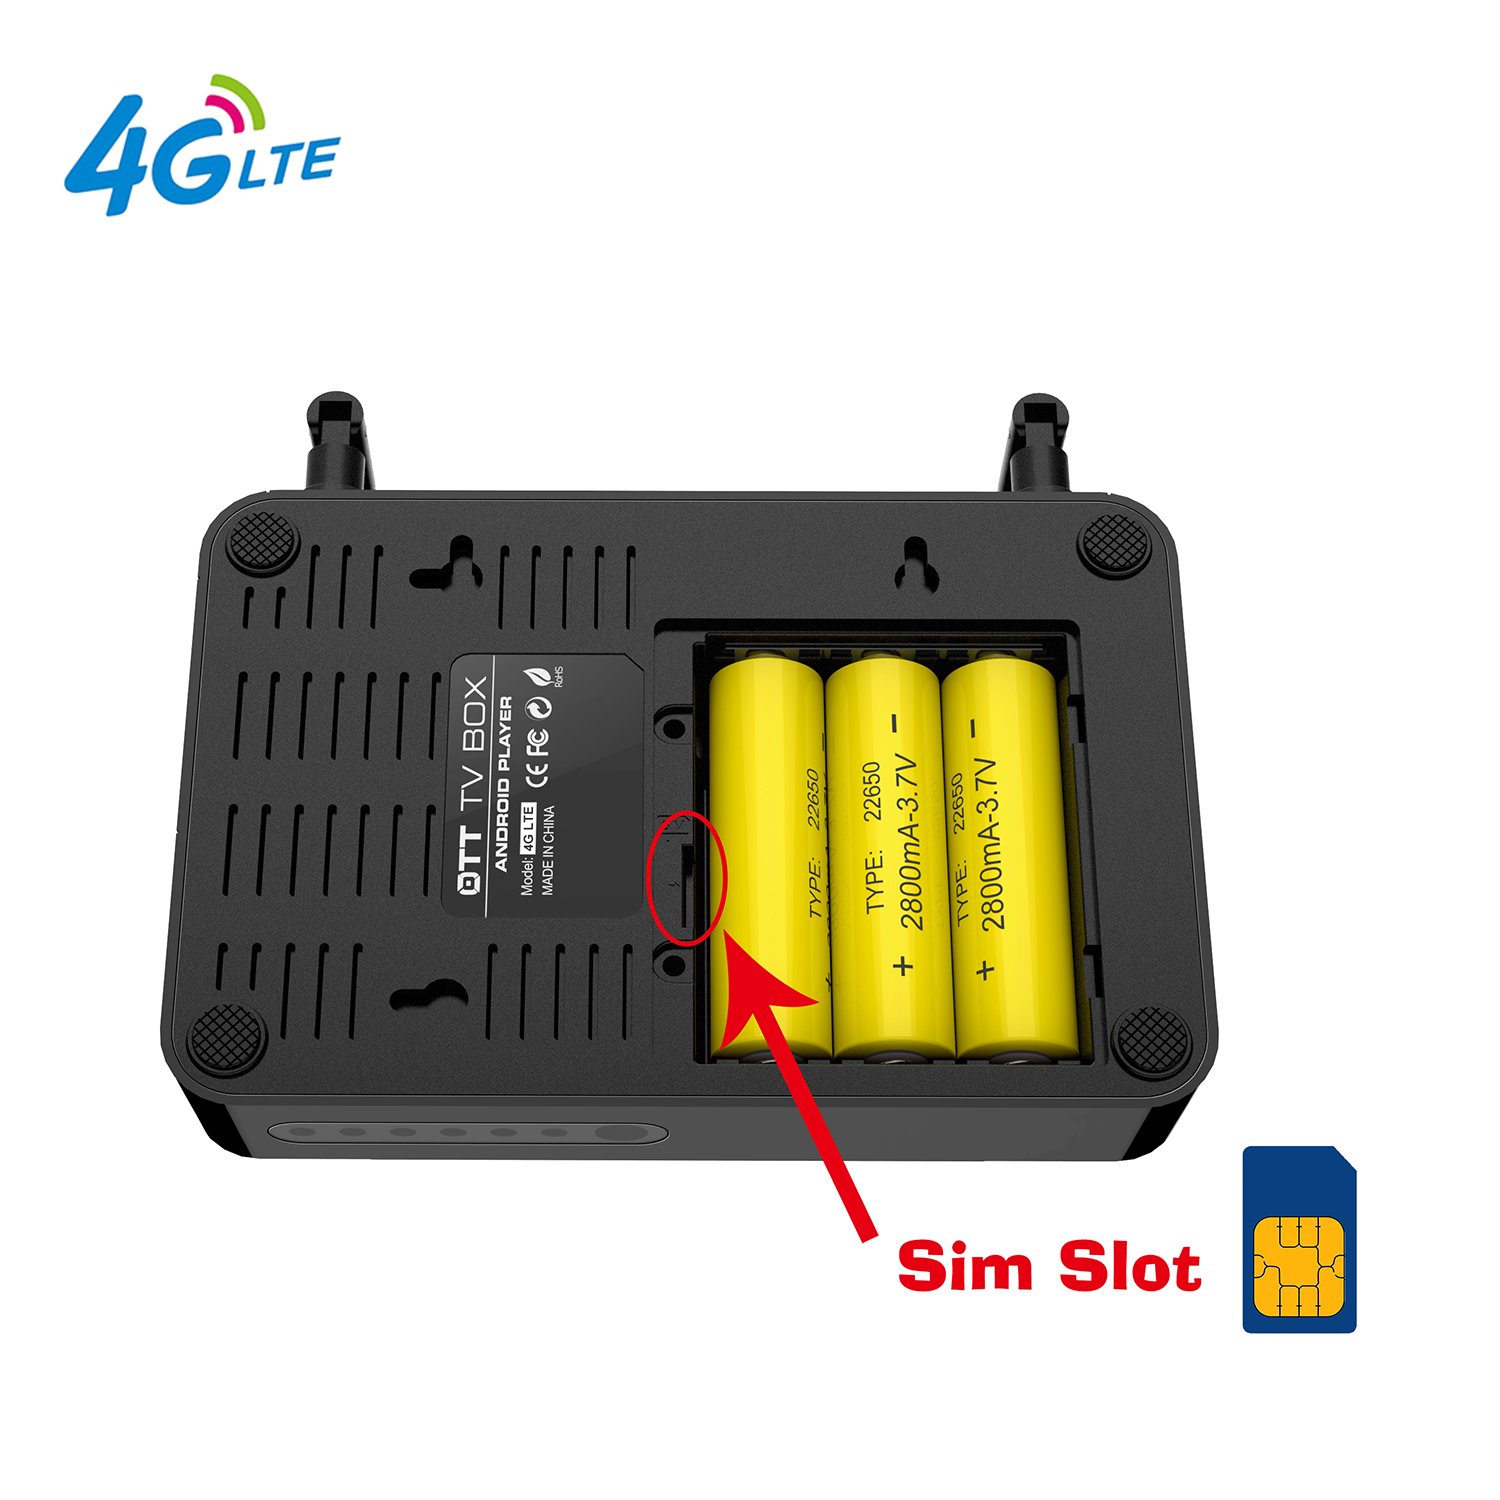 带 3G/4G LTE WCDMA 无线模块的 Android 电视盒内置带 3G/4G SIM 卡插槽的 Android 电视盒